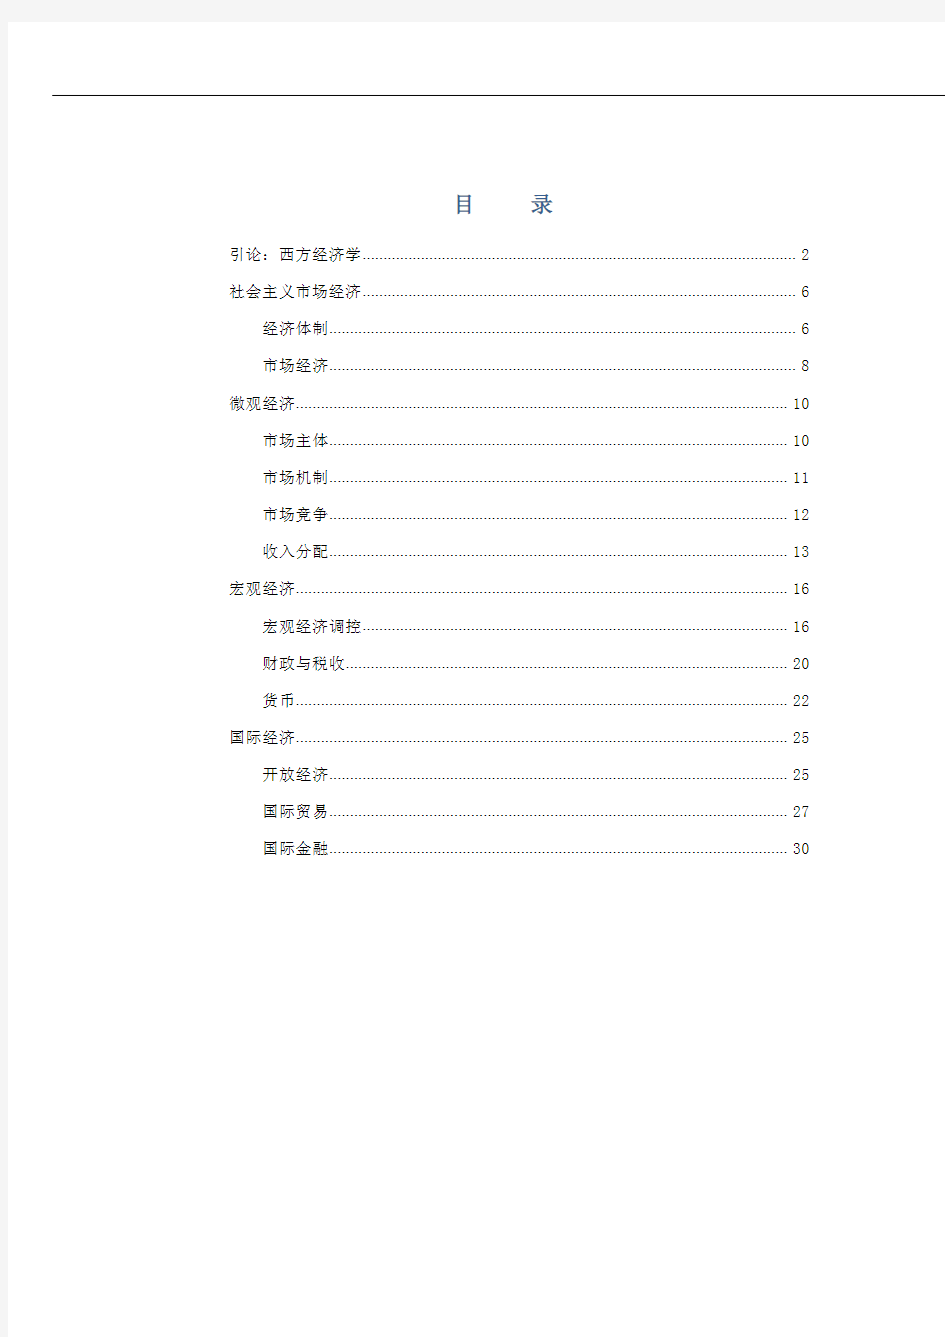 重庆事业单位公招考试2014年最新讲义——经济模块